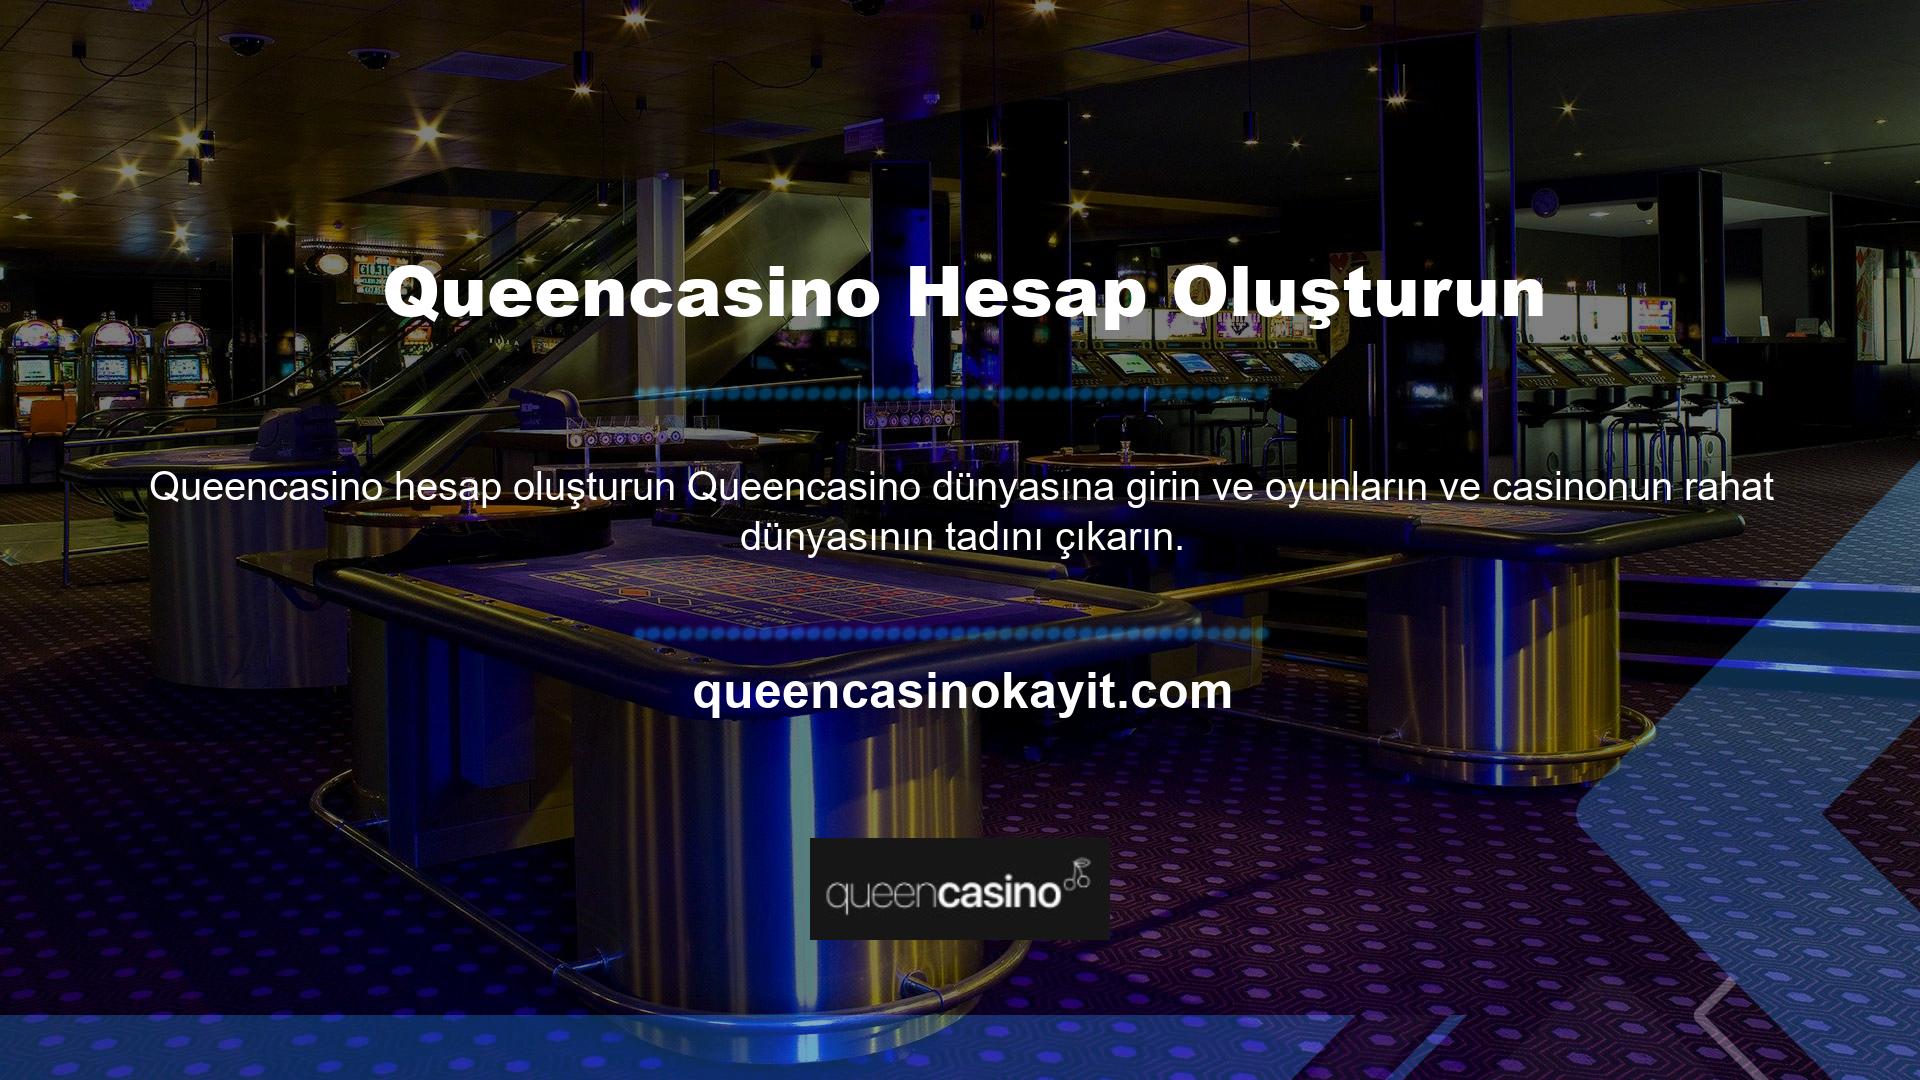 Queencasino dünyanın en çok kullanılan ve popüler casino sitesidir